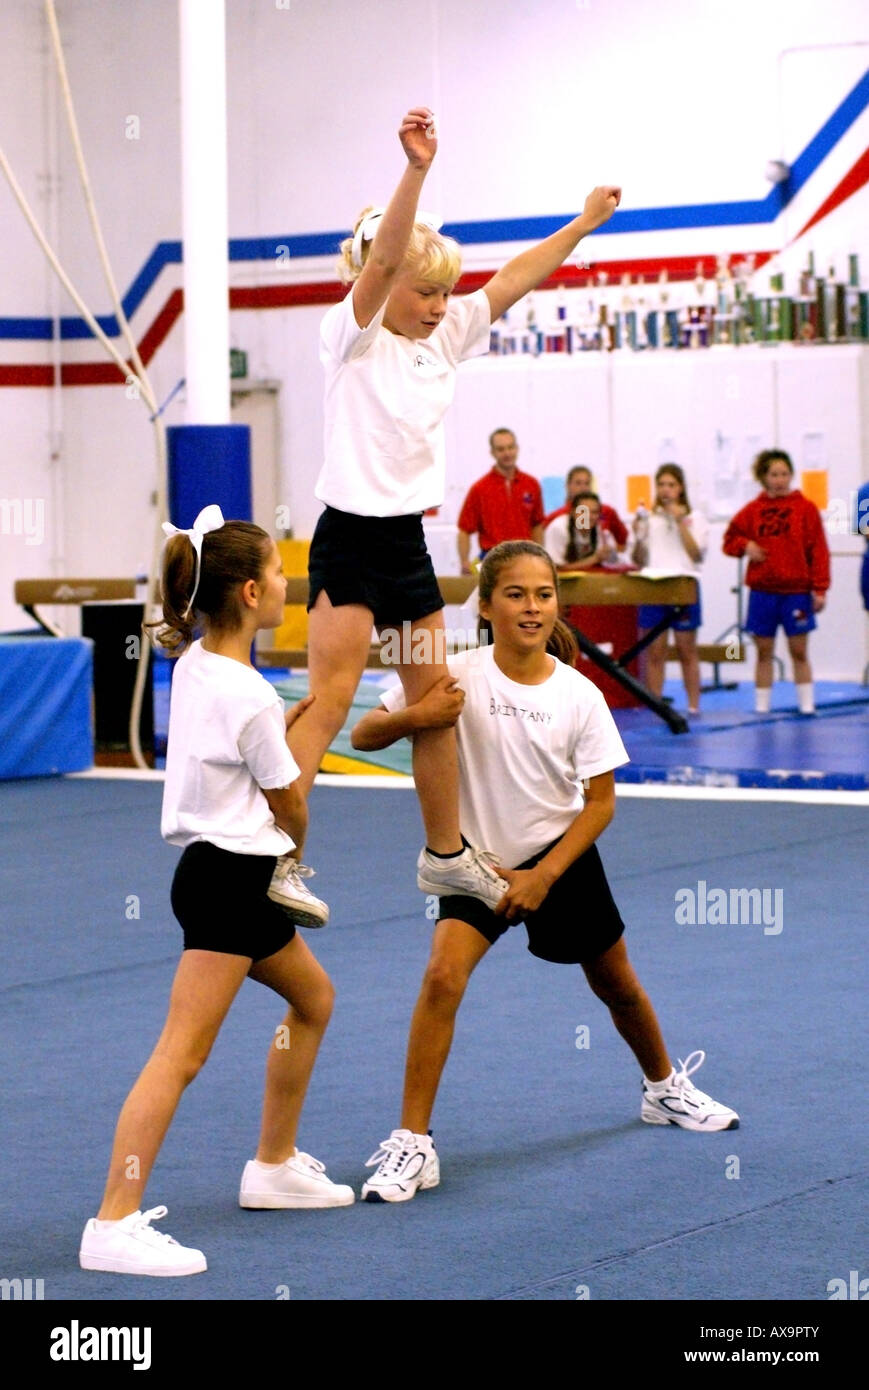 Trois jeunes filles montrent leurs compétences au cours de la démonstration à la gymnastique gymnastique U S Center California pas libéré Banque D'Images